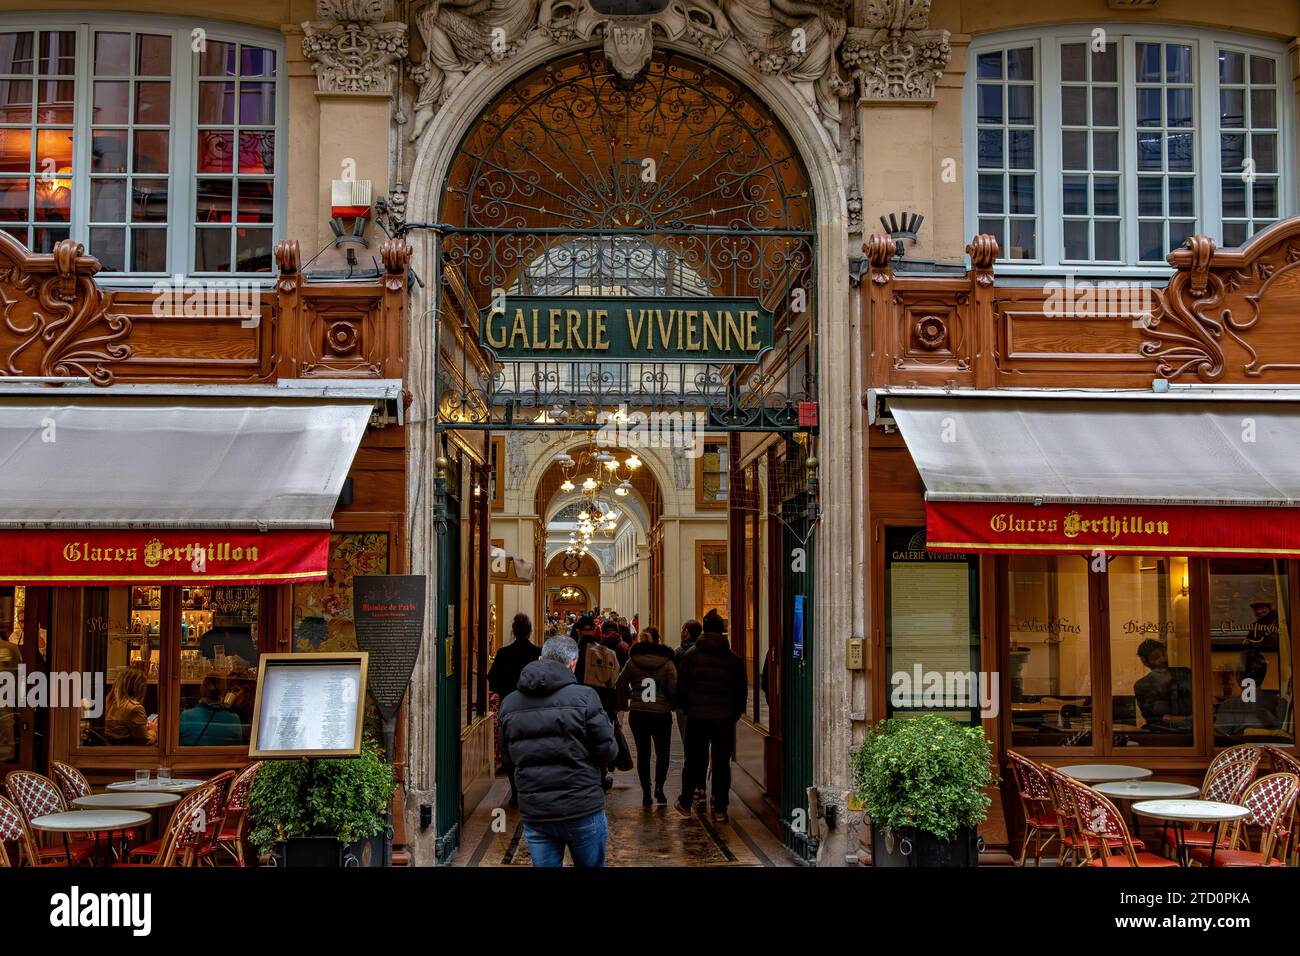 L'entrée de la Galerie Vivienne, une belle galerie marchande couverte construite en 1823 située dans le 2e arrondissement de Paris, France Banque D'Images